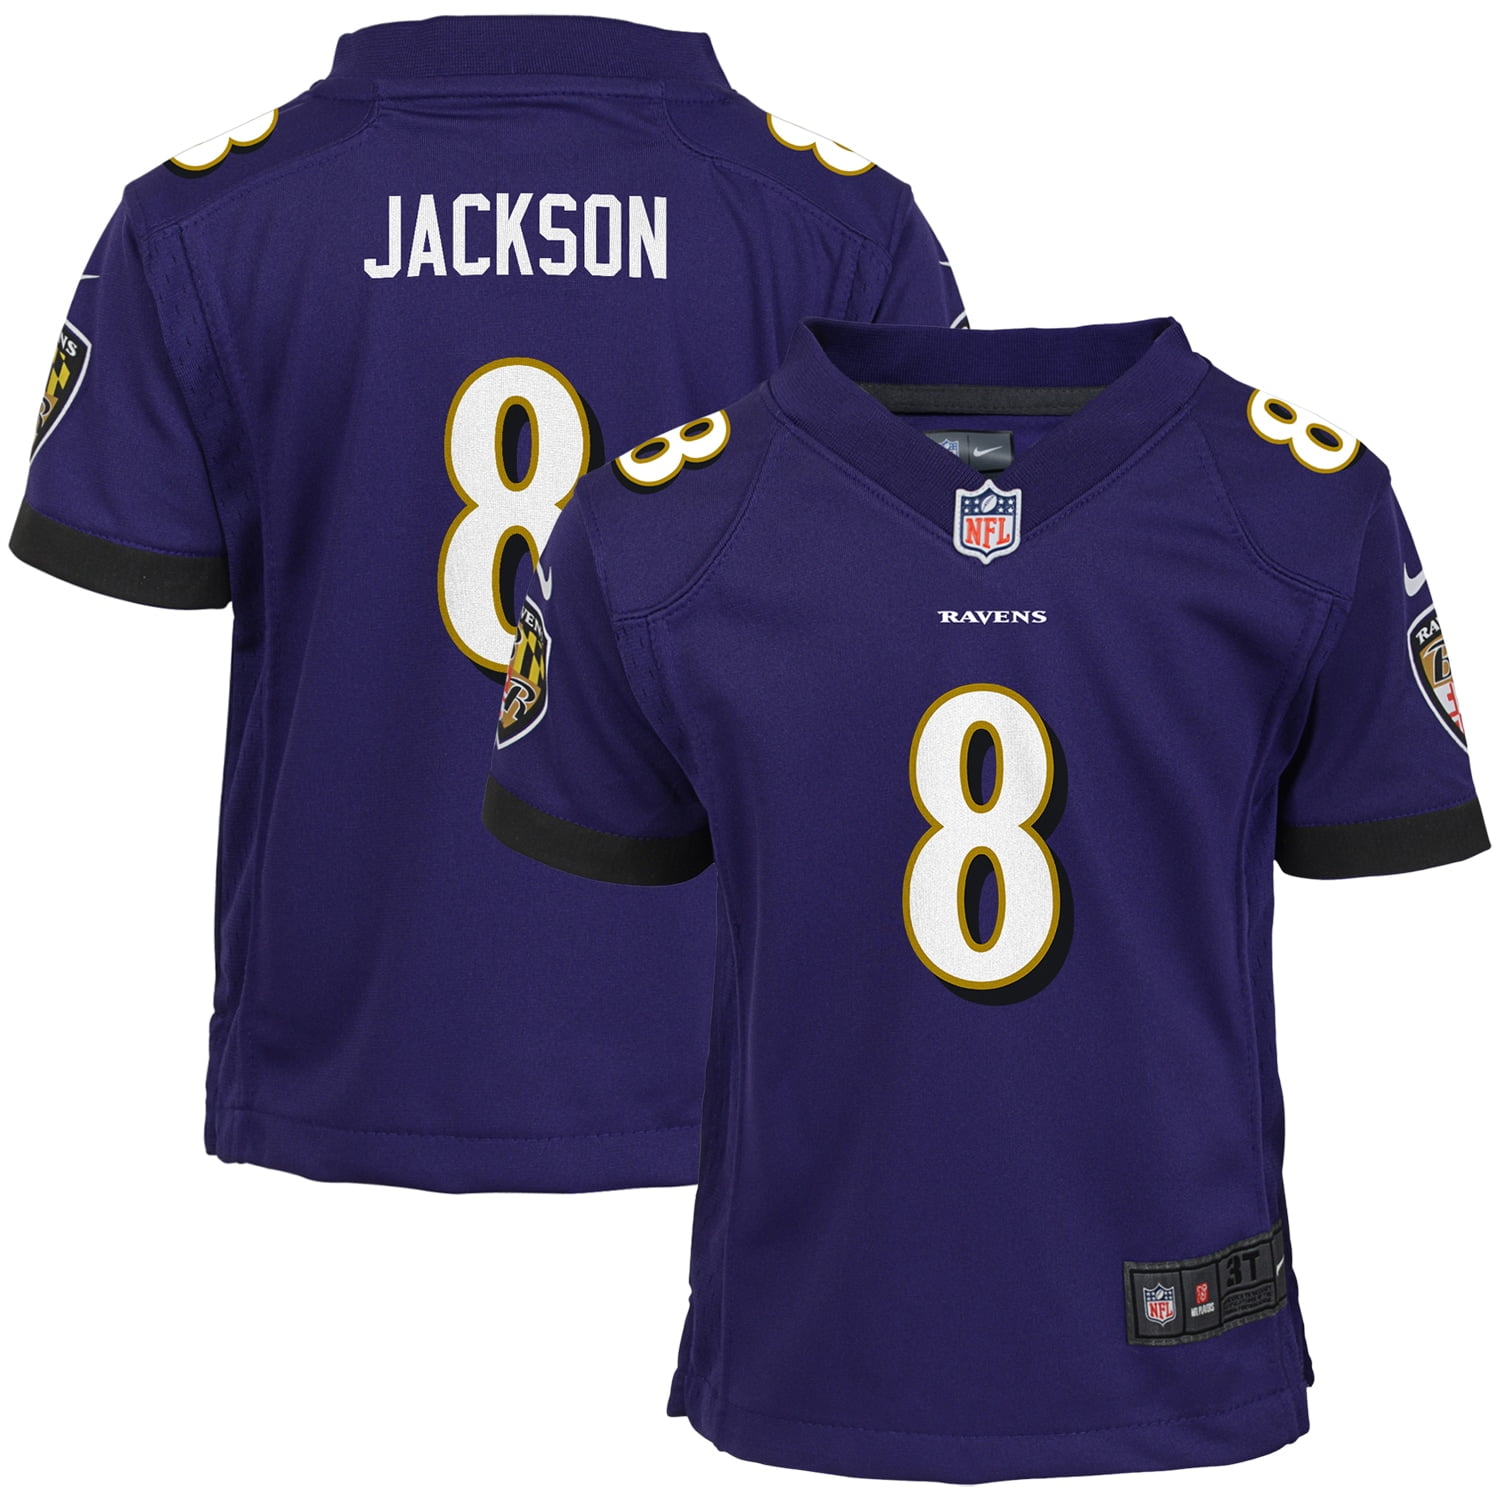 Youth Nike Lamar Jackson Purple Baltimore Ravens Game Jersey